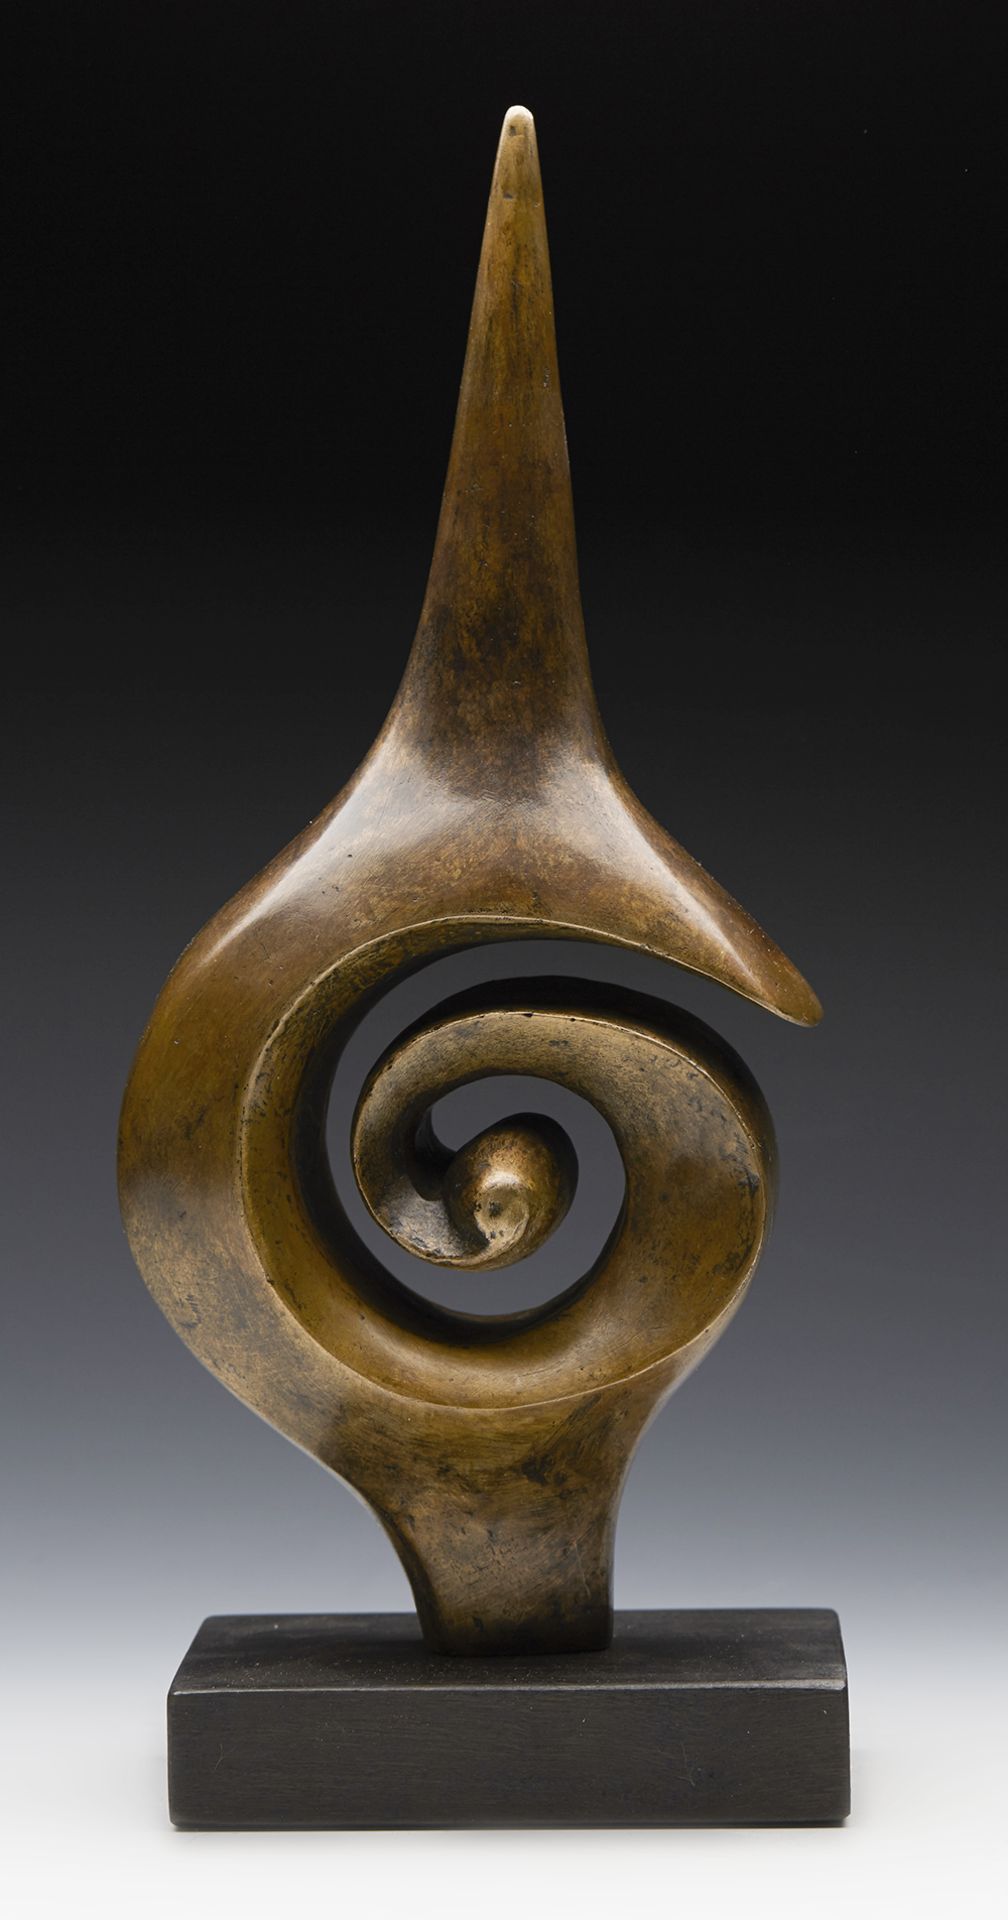 Spiral Figure Ltd Edn Bronze Sculpture By John Farnham - Image 8 of 9